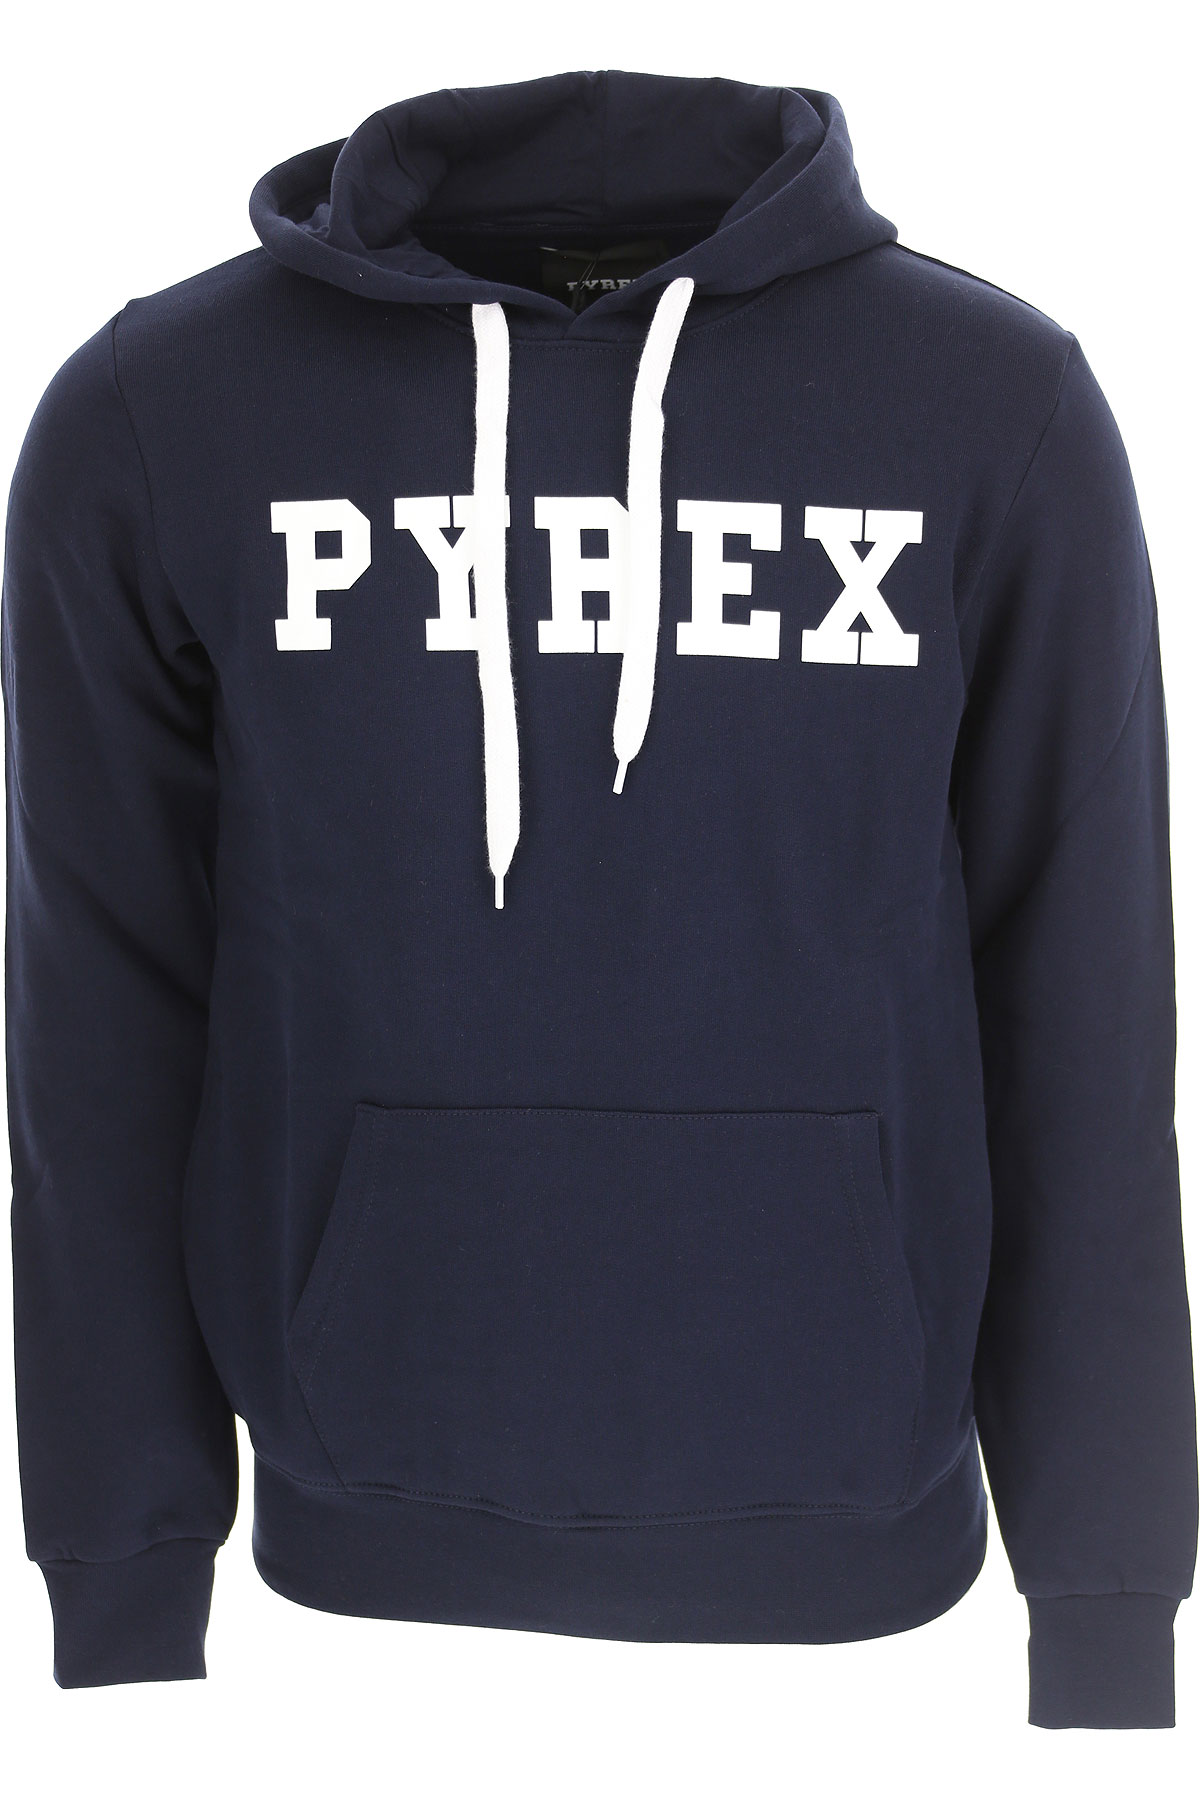 Pyrex Sweatshirt für Herren, Kapuzenpulli, Hoodie, Sweats Günstig im Sale, Marineblau, Baumwolle, 2017, L M S XL XS